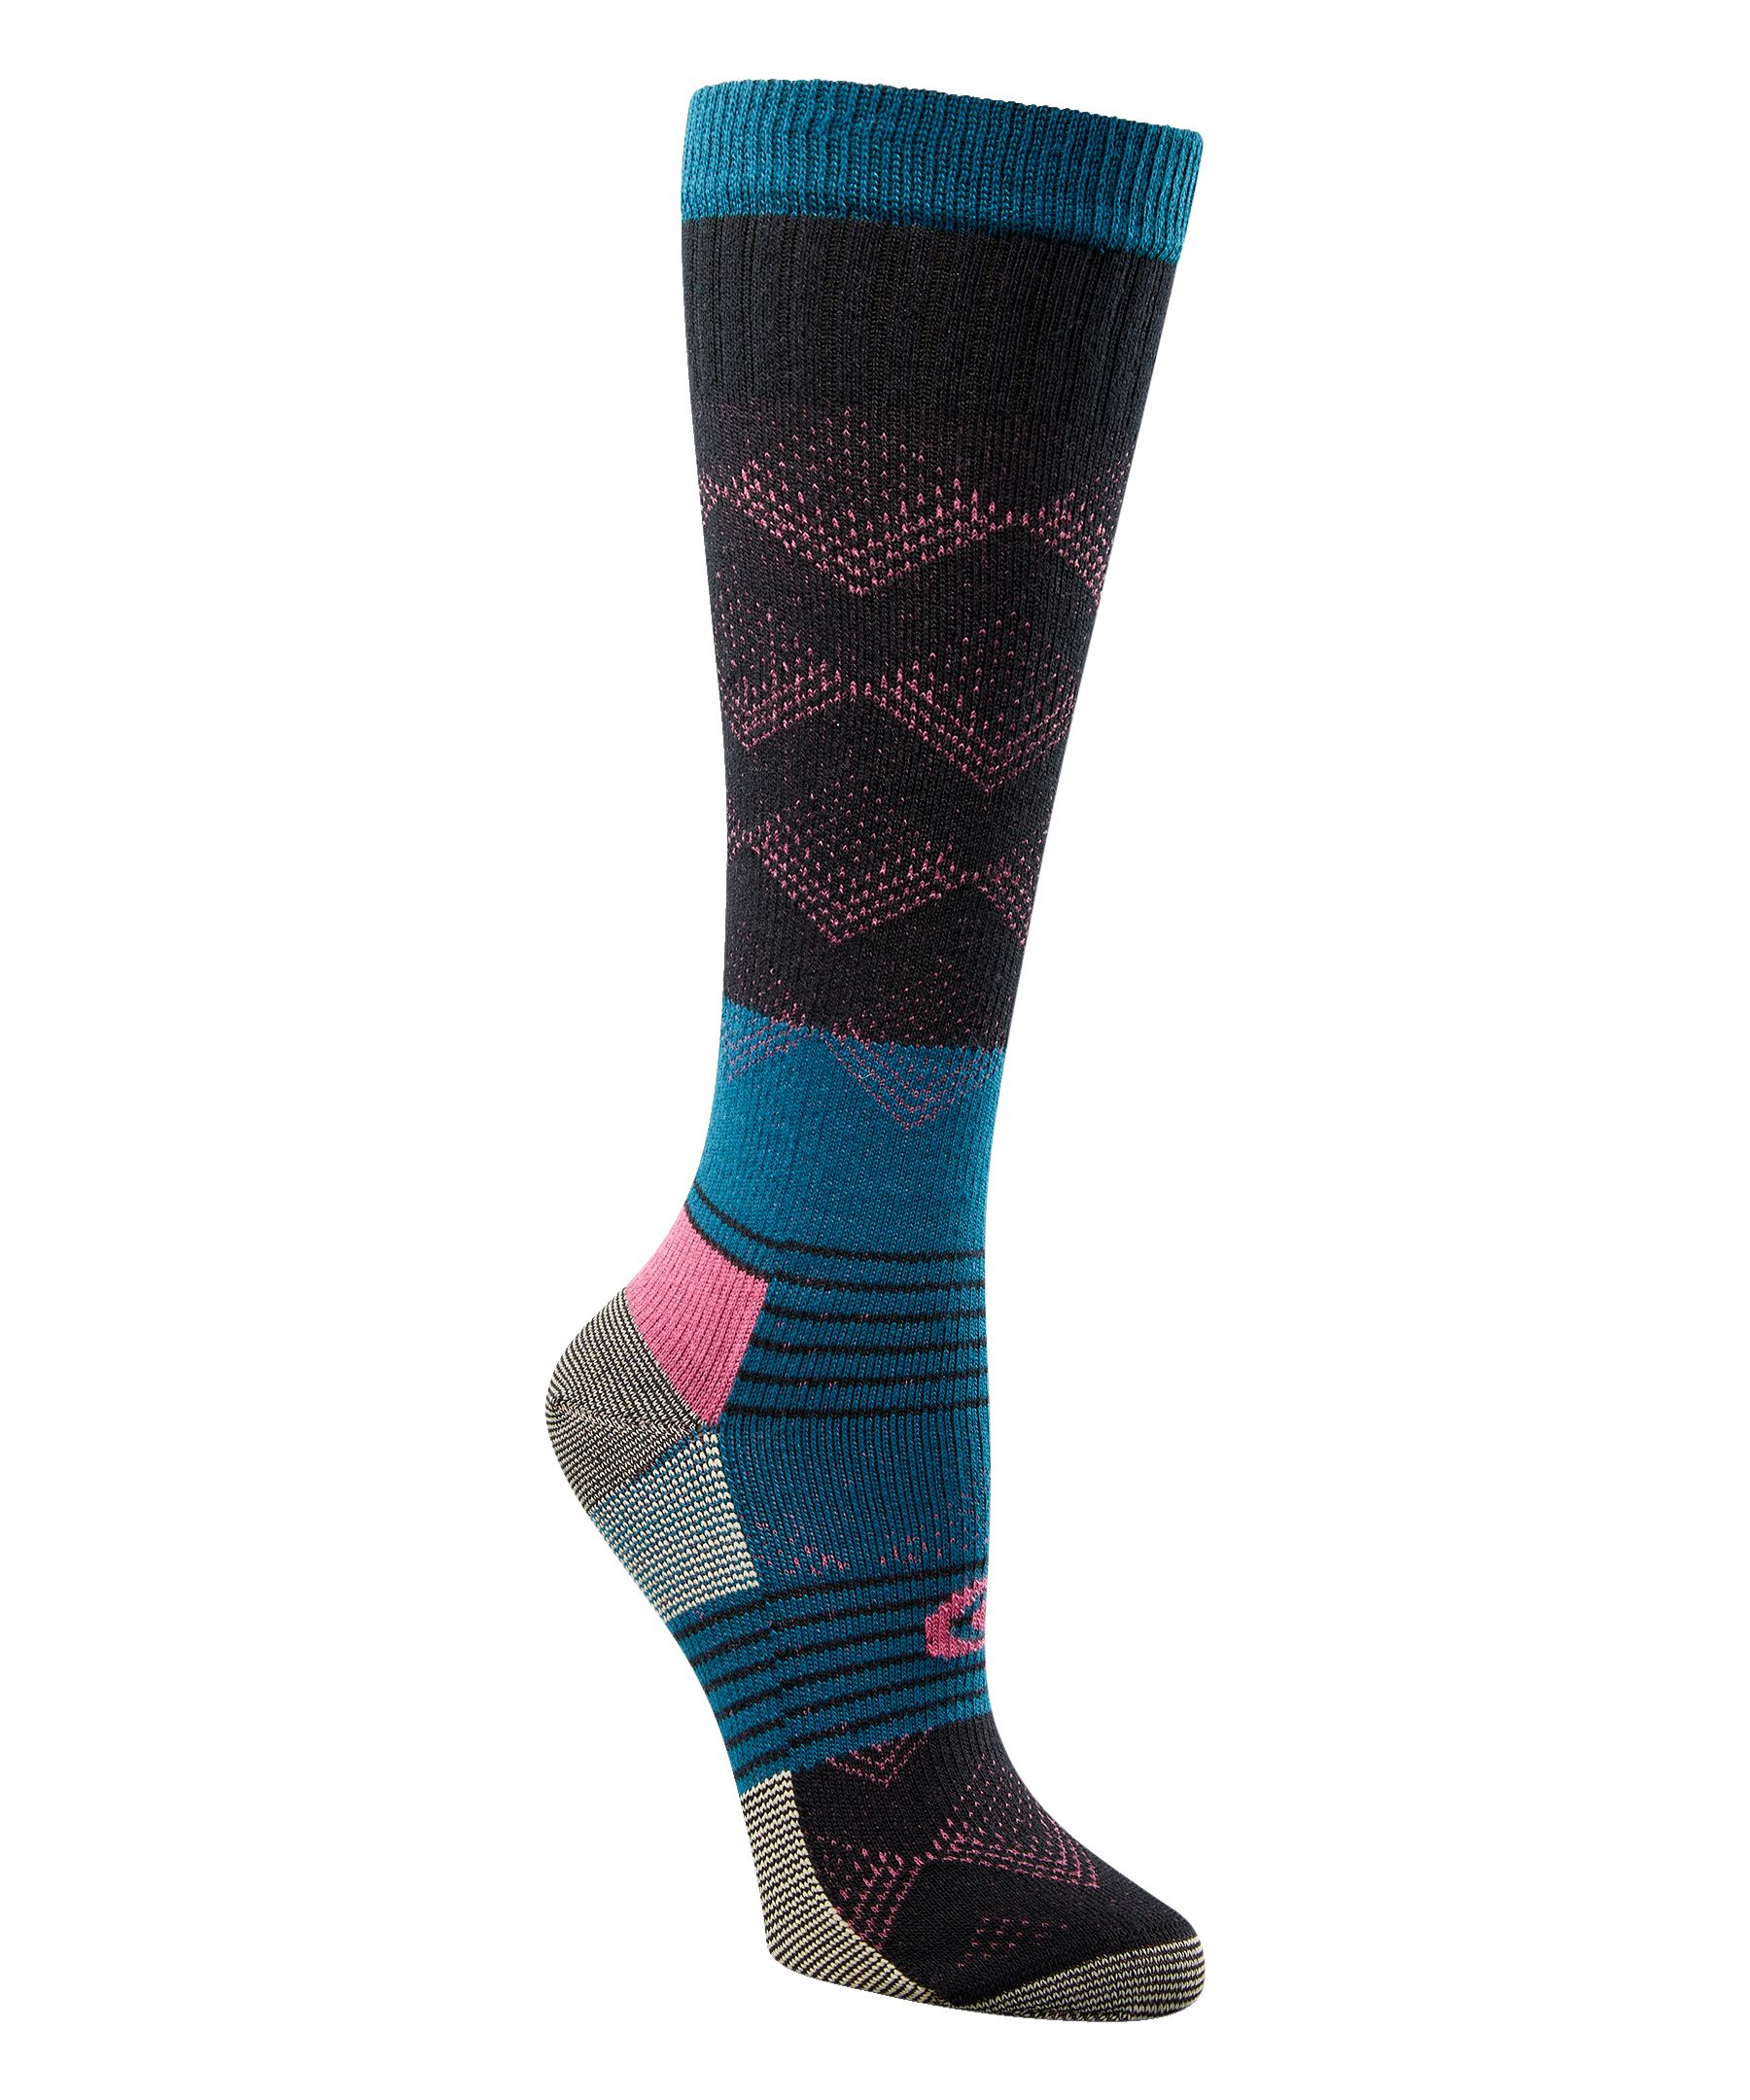 Copper Sole Women's Compression Over The Calf Socks | Marks